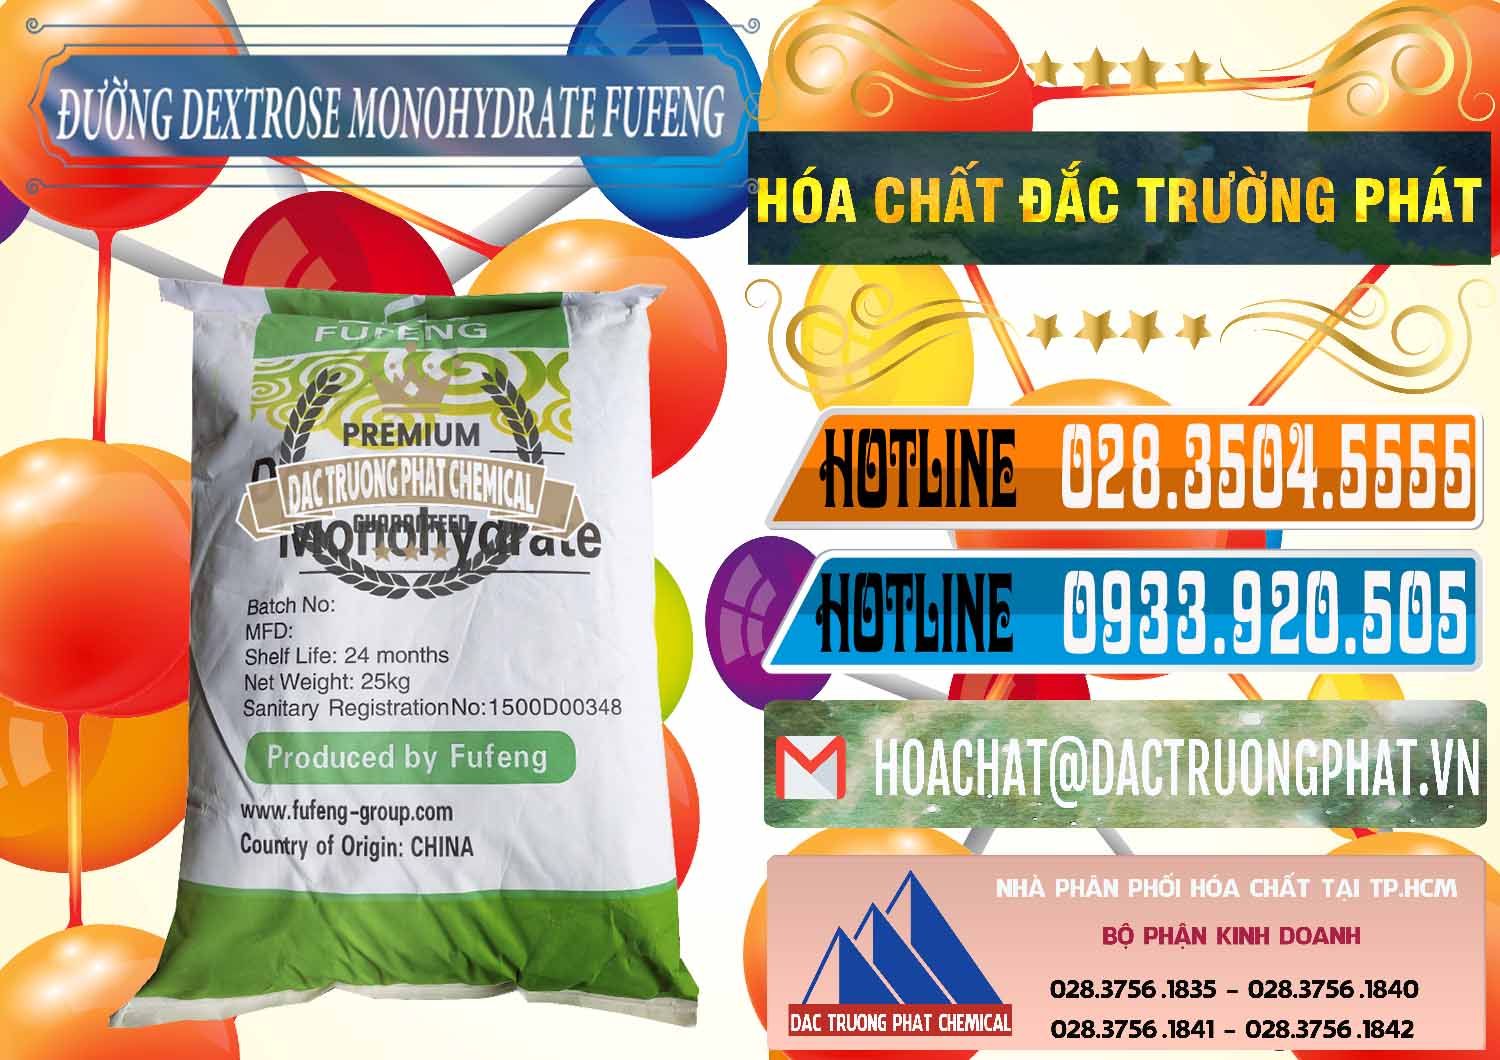 Nơi chuyên nhập khẩu _ bán Đường Dextrose Monohydrate Food Grade Fufeng Trung Quốc China - 0223 - Công ty nhập khẩu & cung cấp hóa chất tại TP.HCM - stmp.net